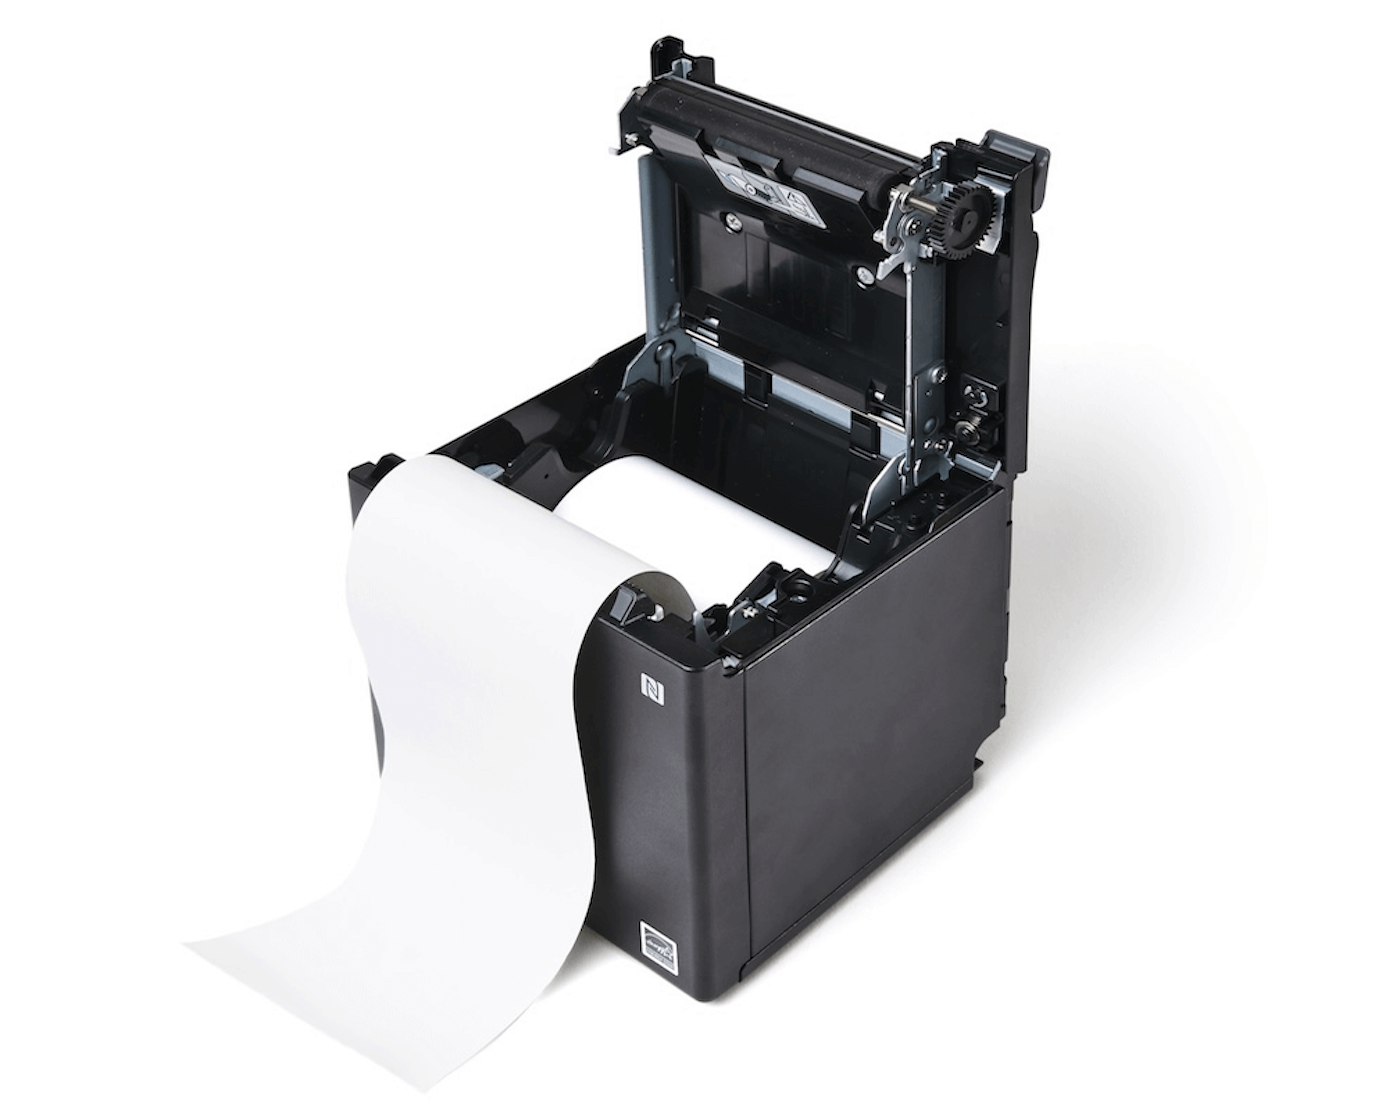 Imprimante avec le couvercle enlevé et le rouleau de papier inséré de façon à se dérouler depuis le bas, vers l'utilisateur.